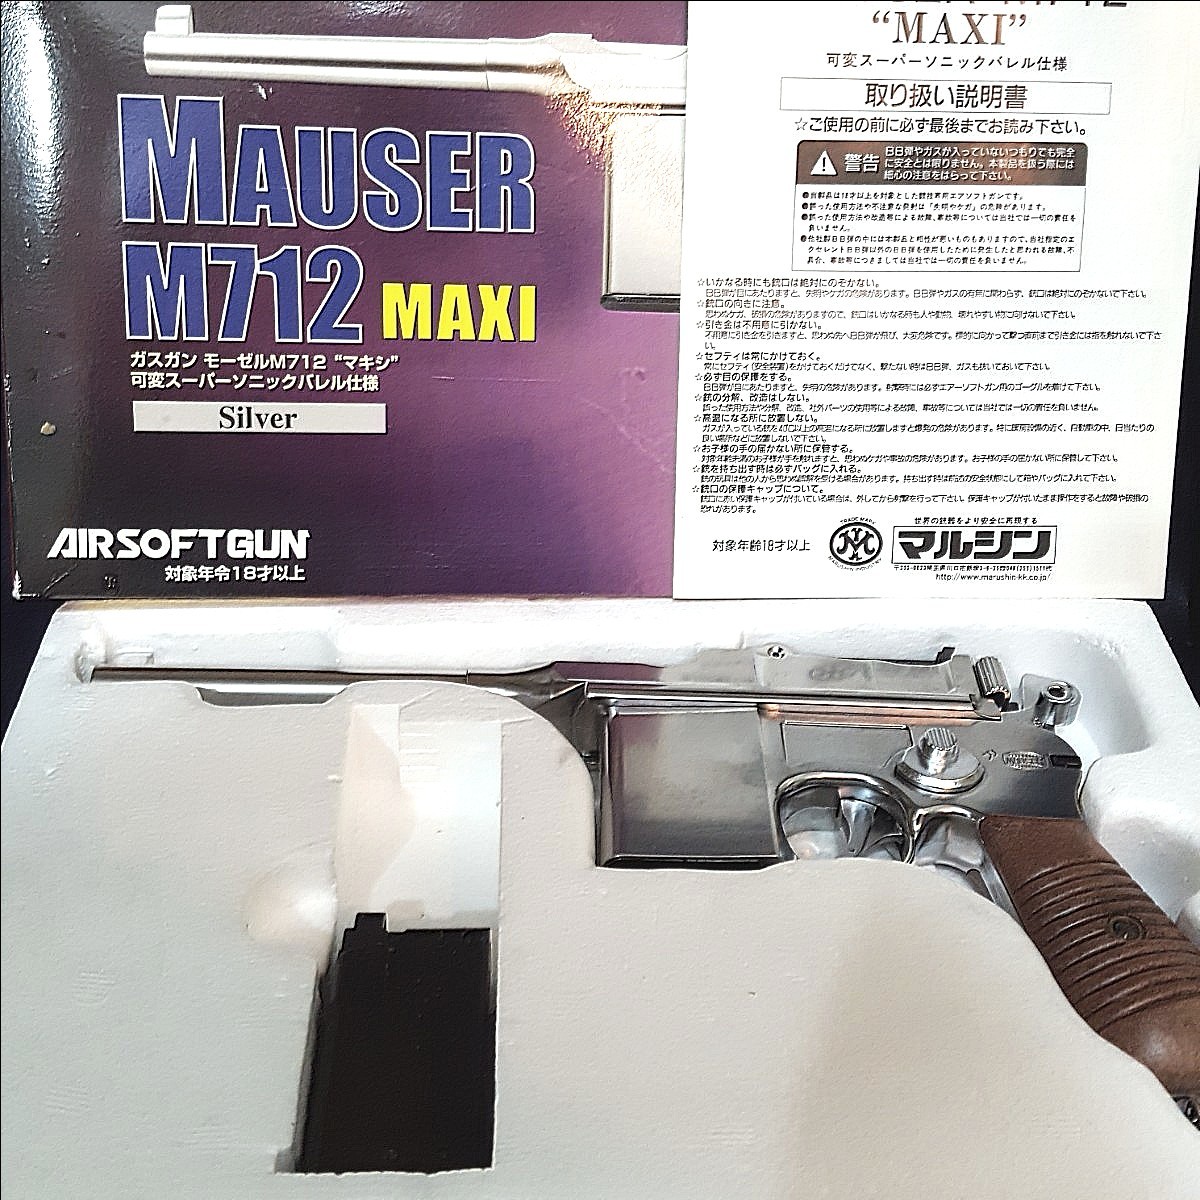 モーゼル MAUSER M712 MAXI 固定スライド ガスガン エアーソフトガン